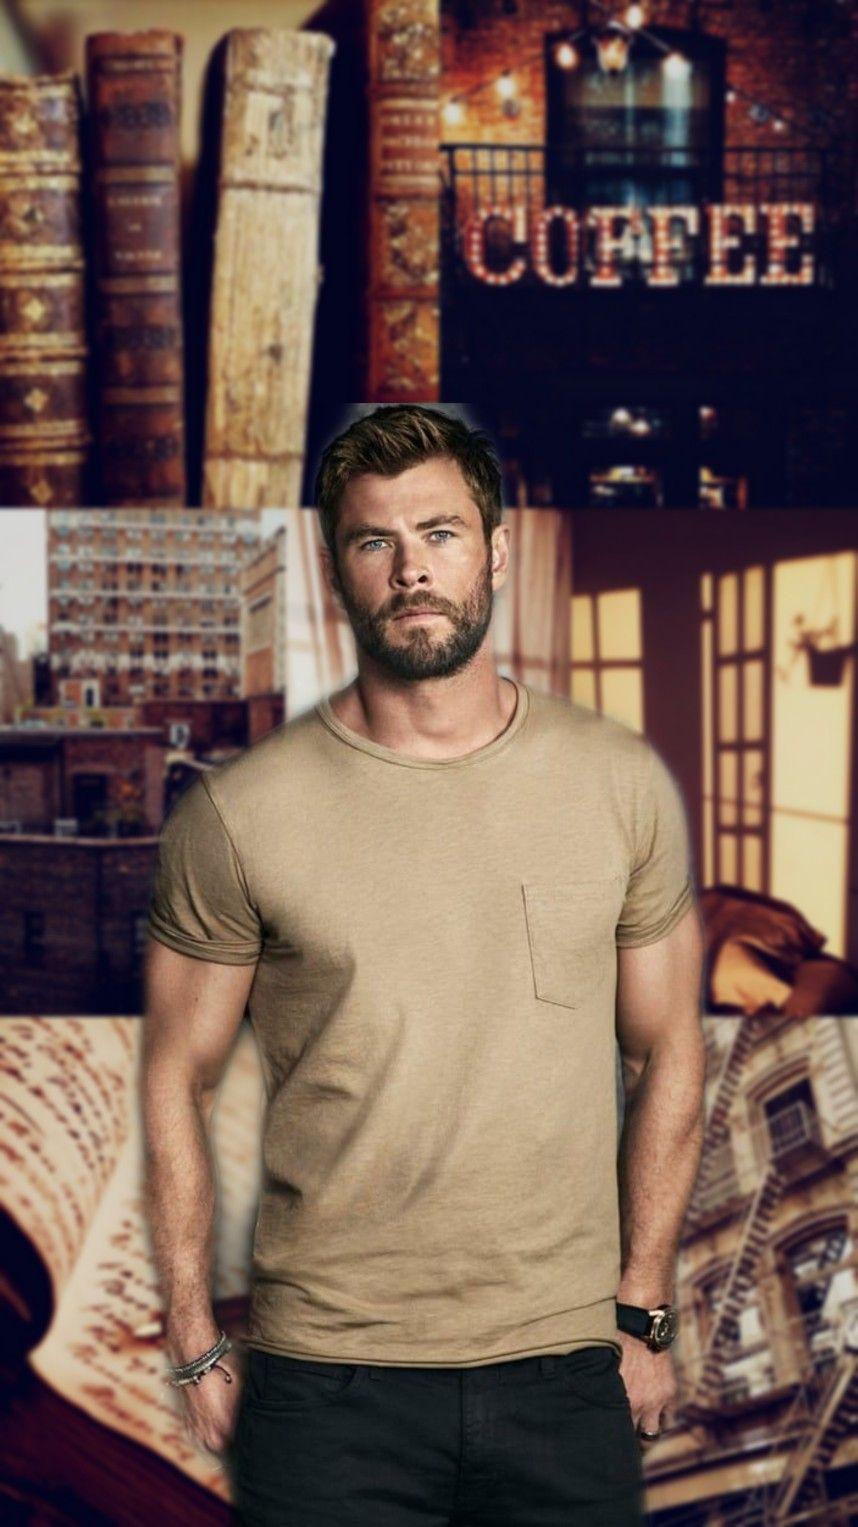 Chris Hemsworth lockscreen. MARVEL lockscreen. Chris hemsworth, Hemsworth, Chris evans shirtless